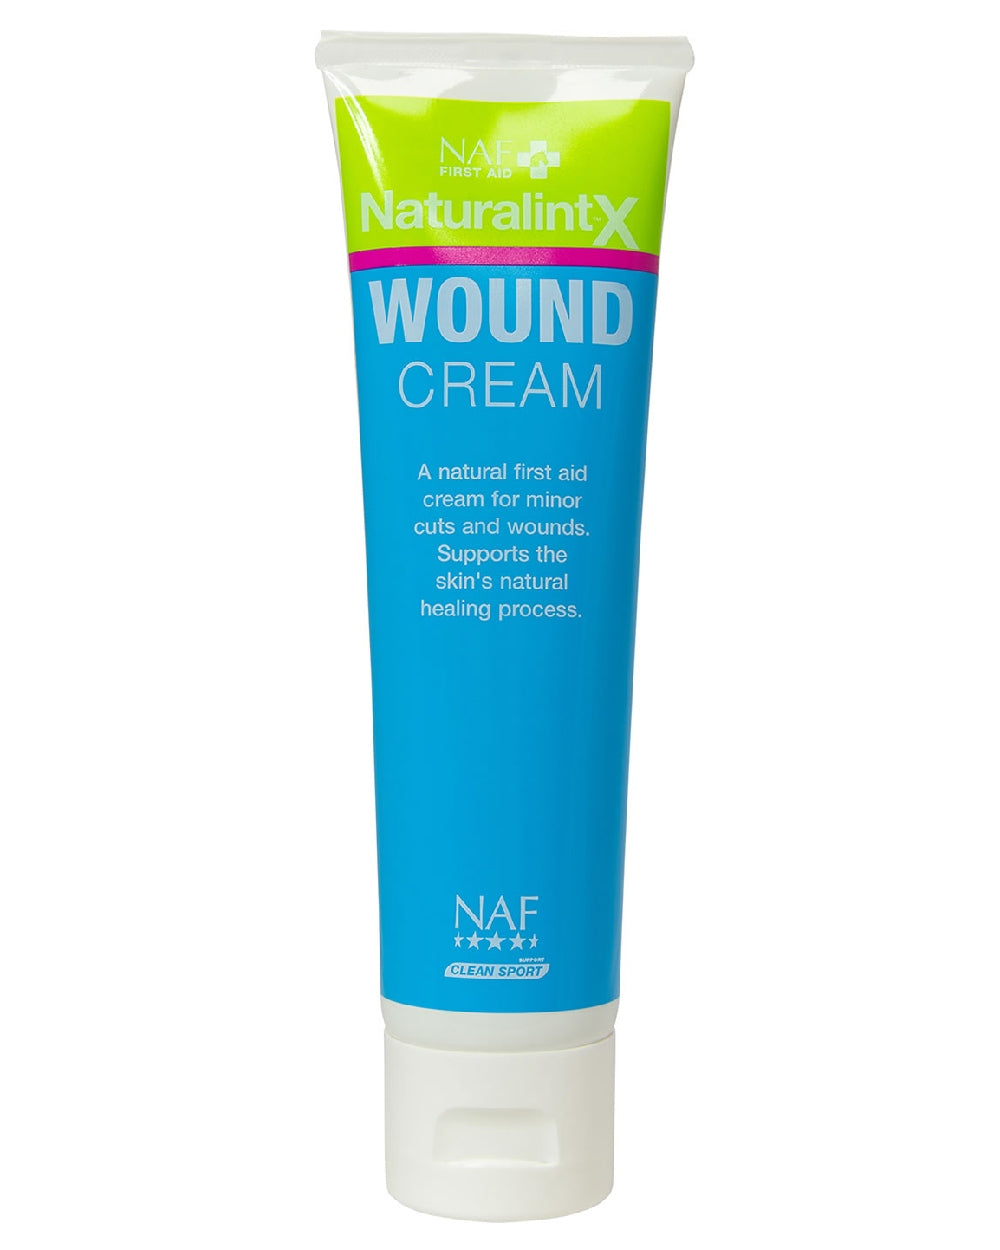 NAF Naturalintx Wound Cream 100ml on white background